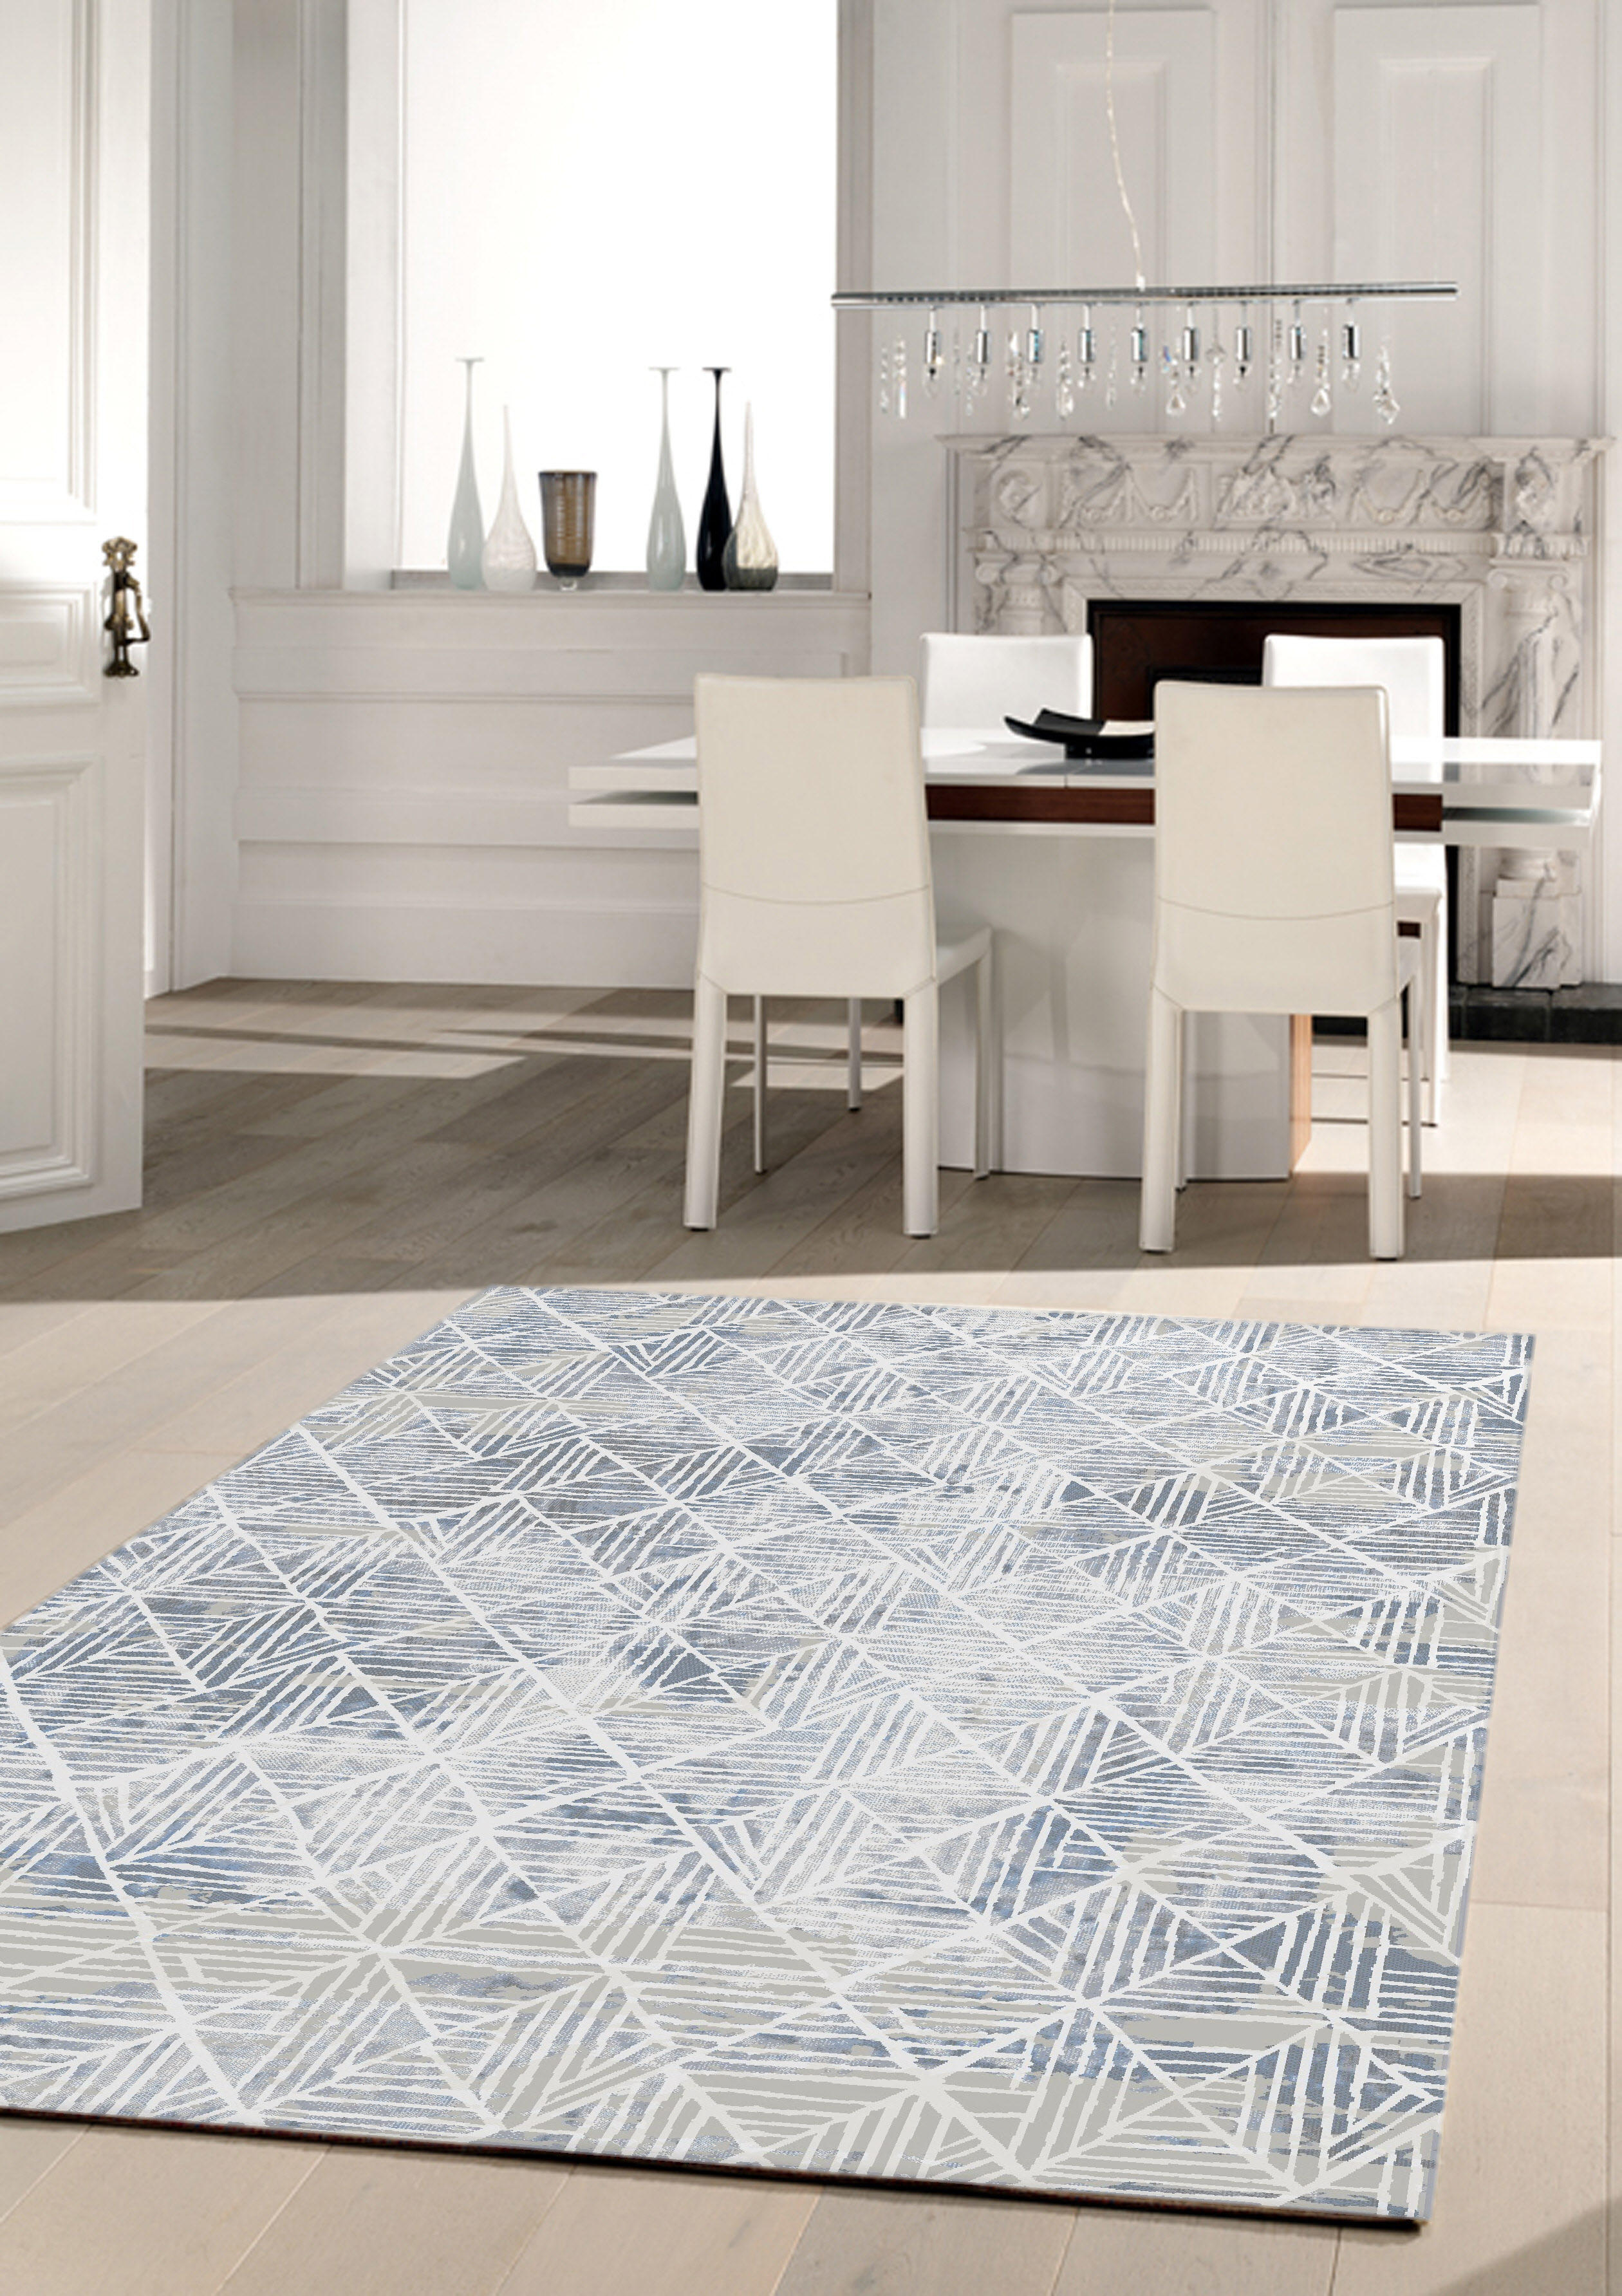 Szegett szőnyeg   - Fehér/Kék, Design, Textil (80/150cm) - Novel